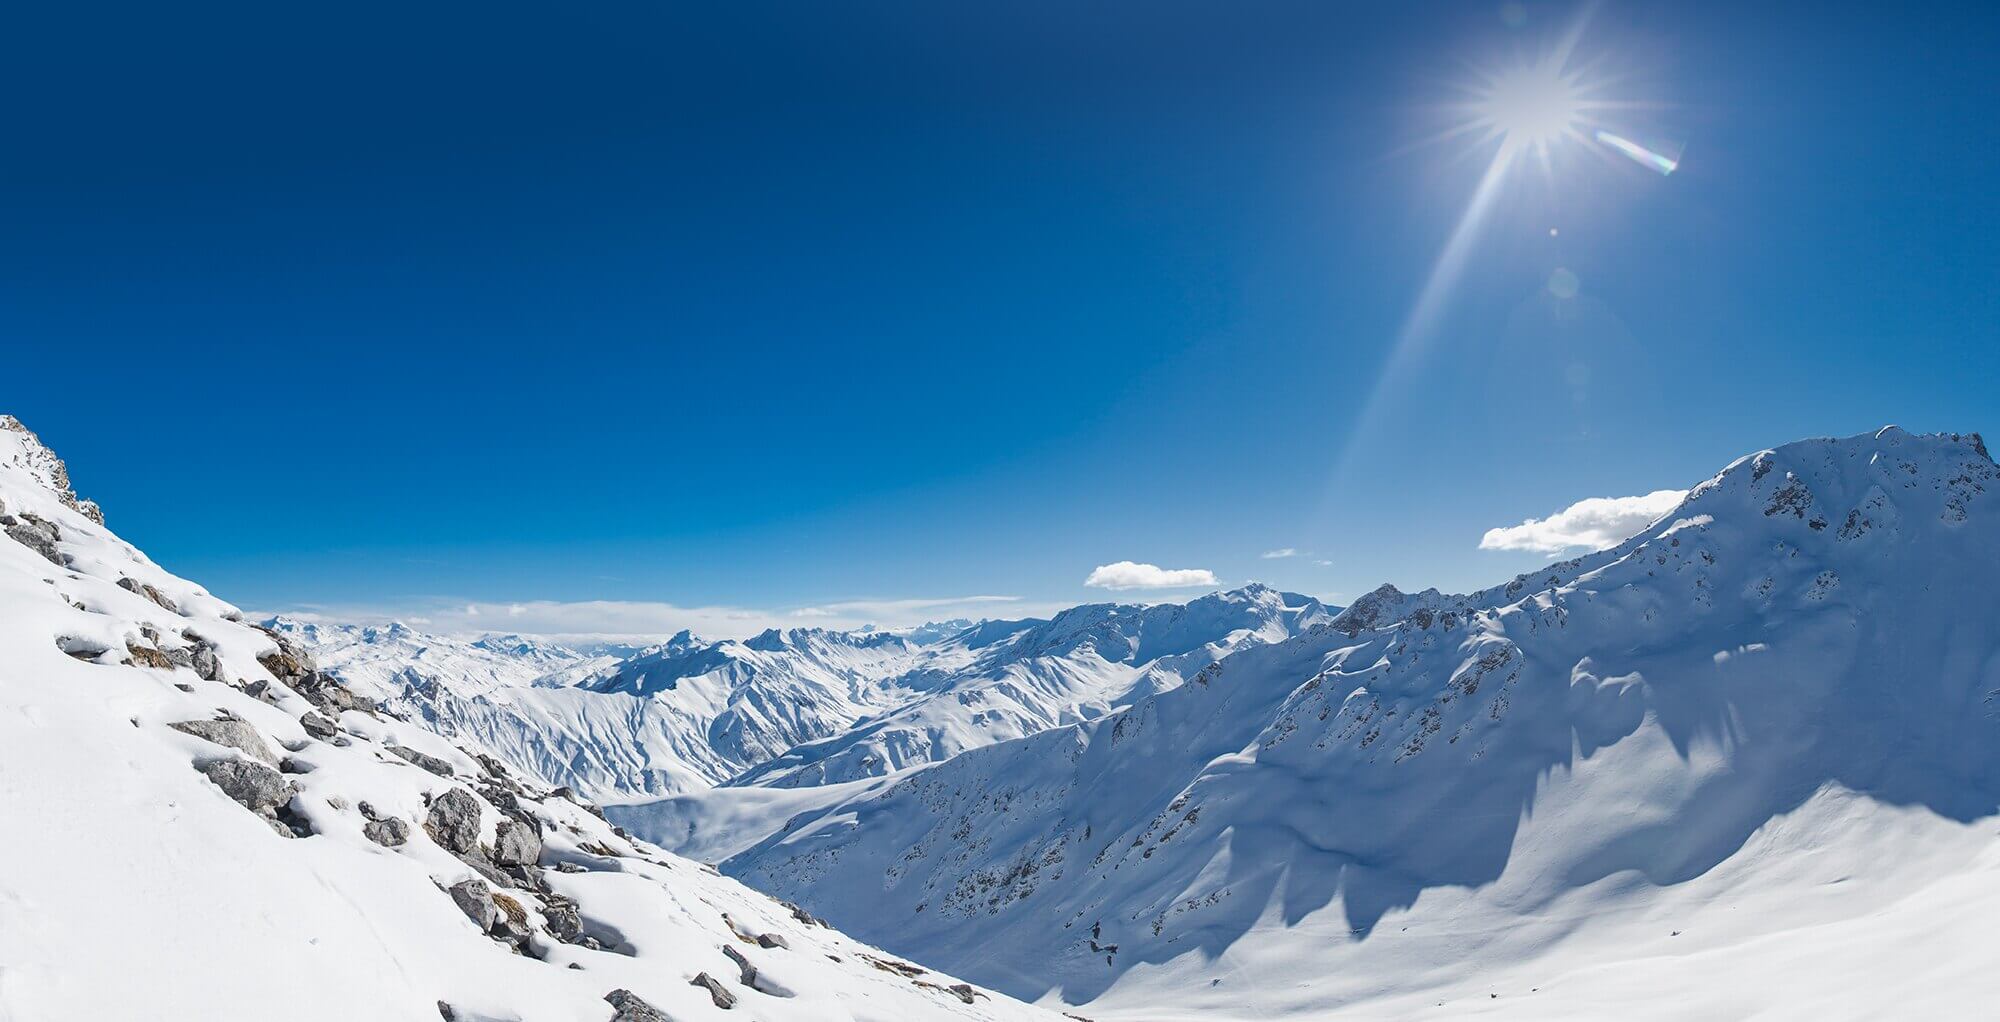 Температура скал в Альпах начала быстро расти. Каждый 10 лет средняя температура в Альпах повышается на 0,3 градуса, а скалы нагреваются еще быстрее. Фото.